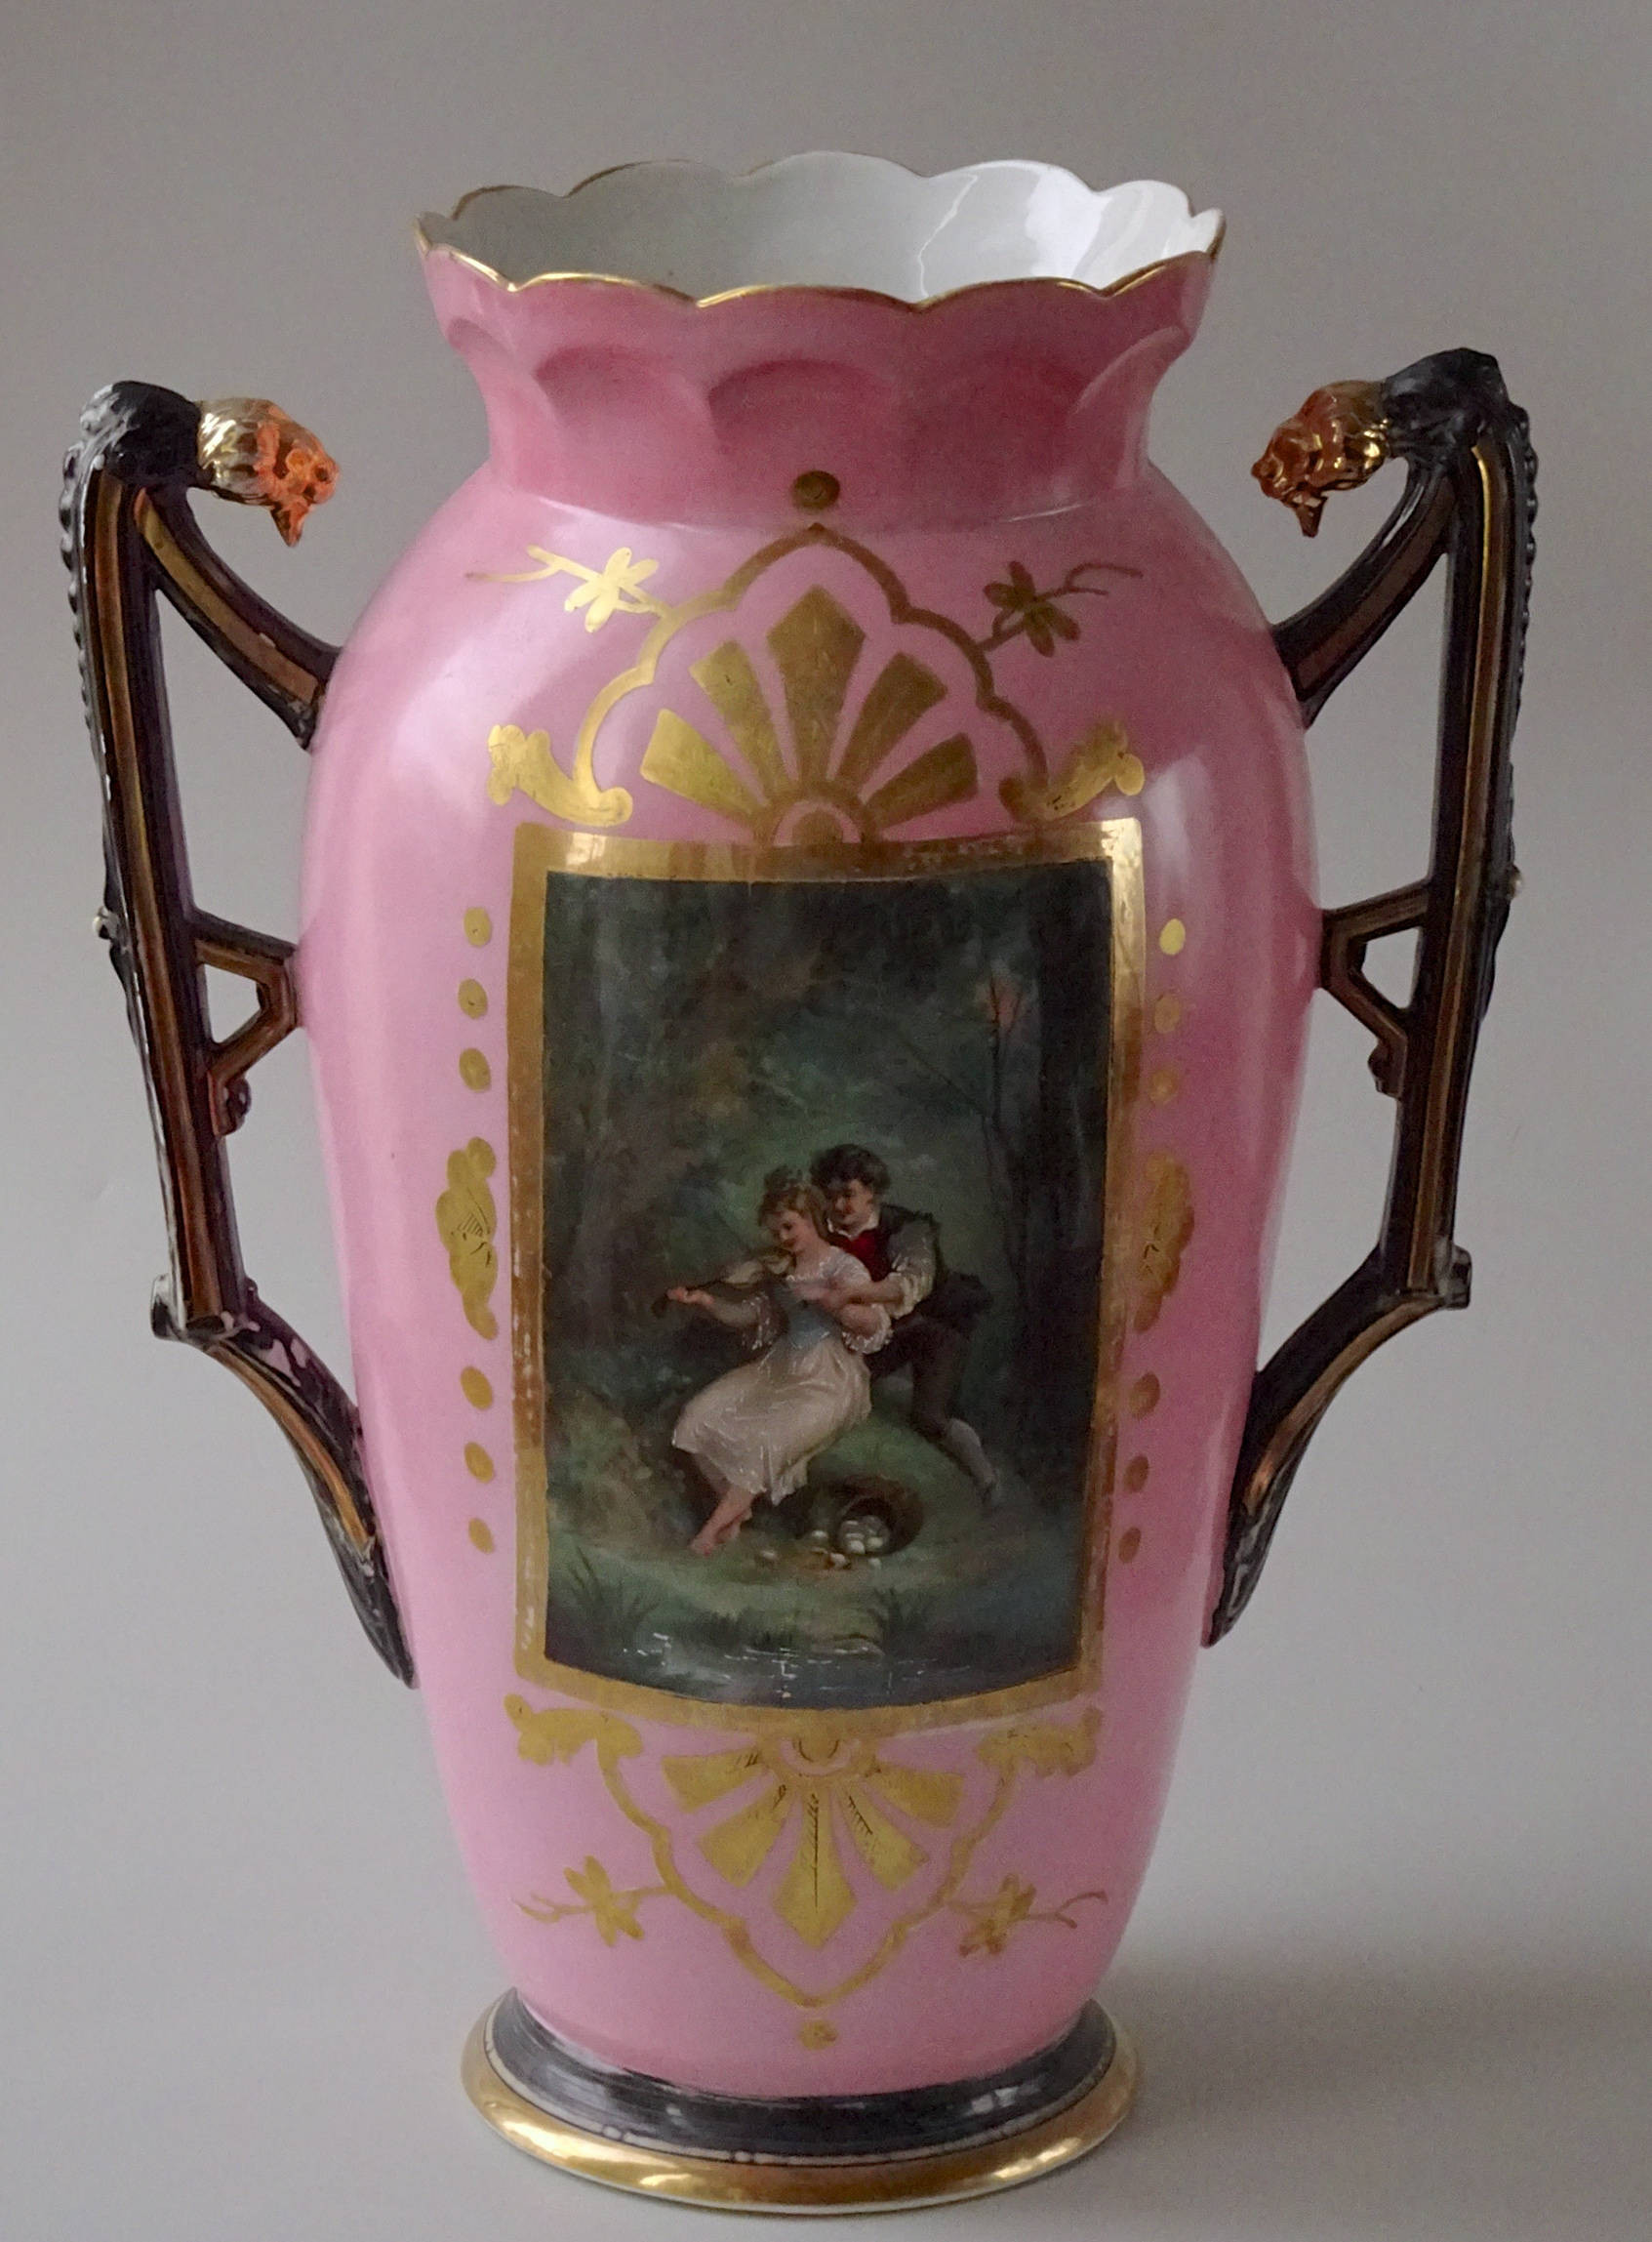 12 Lovable Royal Doulton Art Nouveau Vases 2024 free download royal doulton art nouveau vases of huge french old paris bucolic scene pink porcelain vase etsy throughout dc29fc294c28ezoom